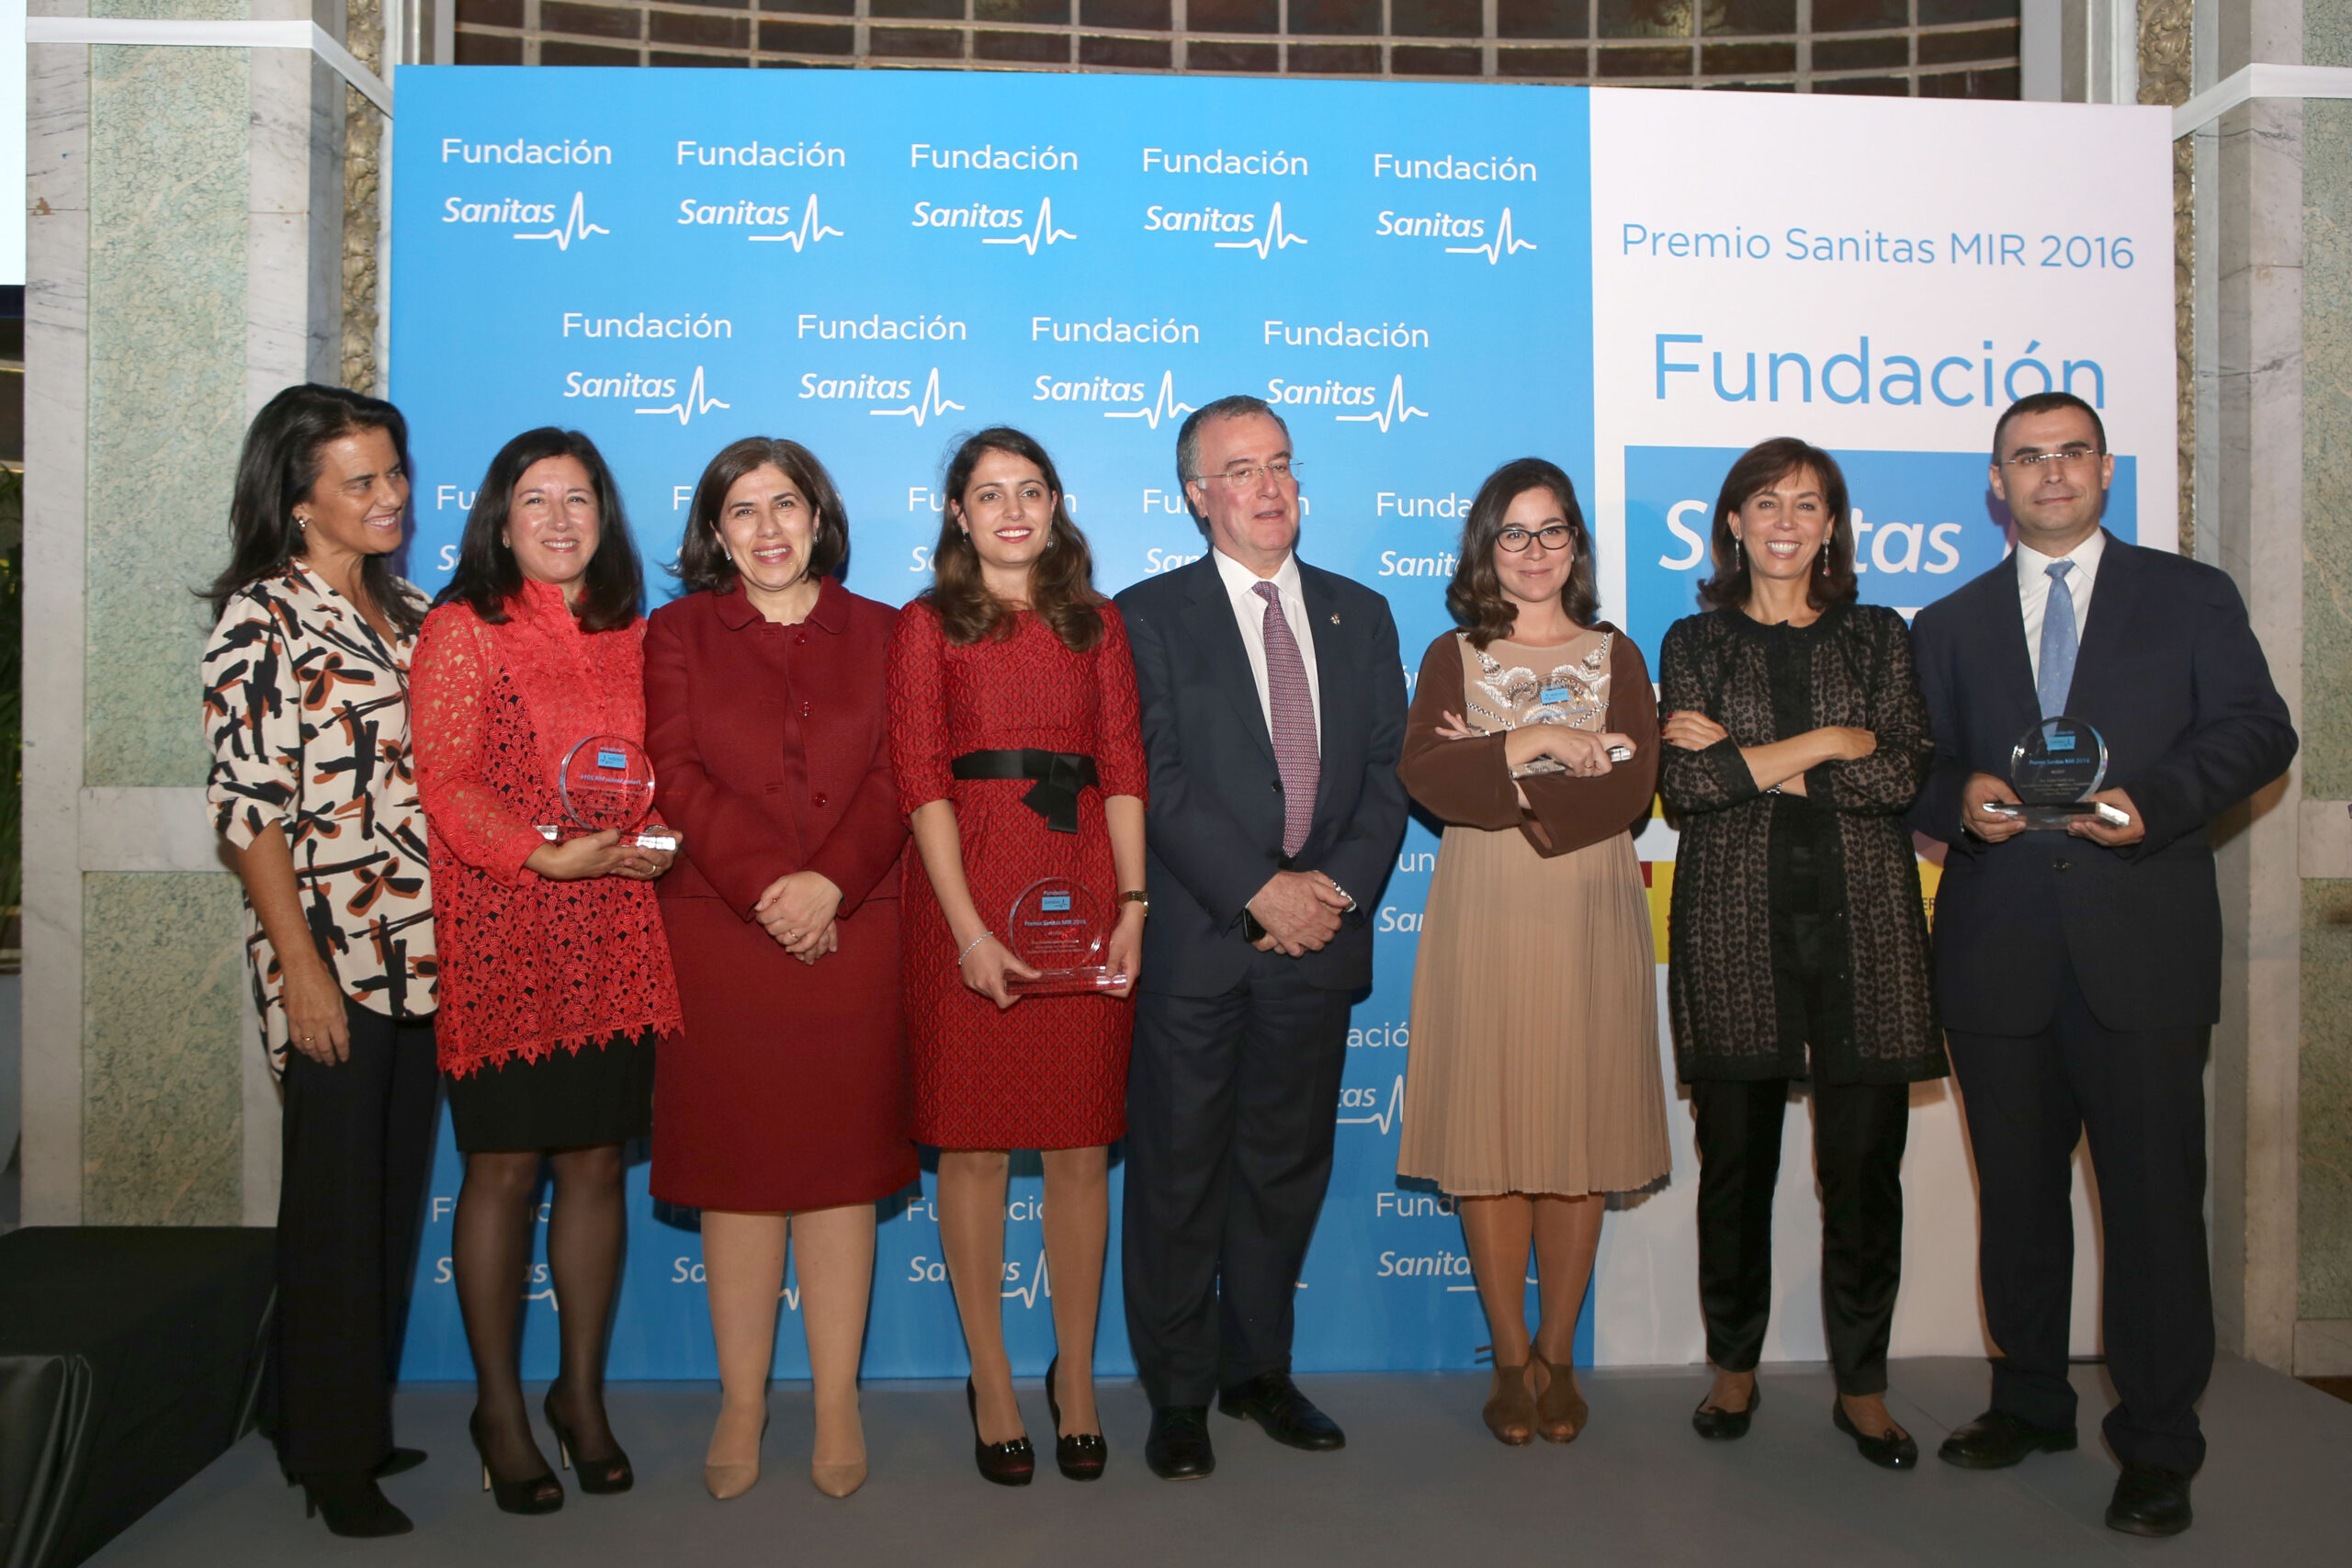 Foto de familia, durante la entrega del Premio Sanitas MIR 2016